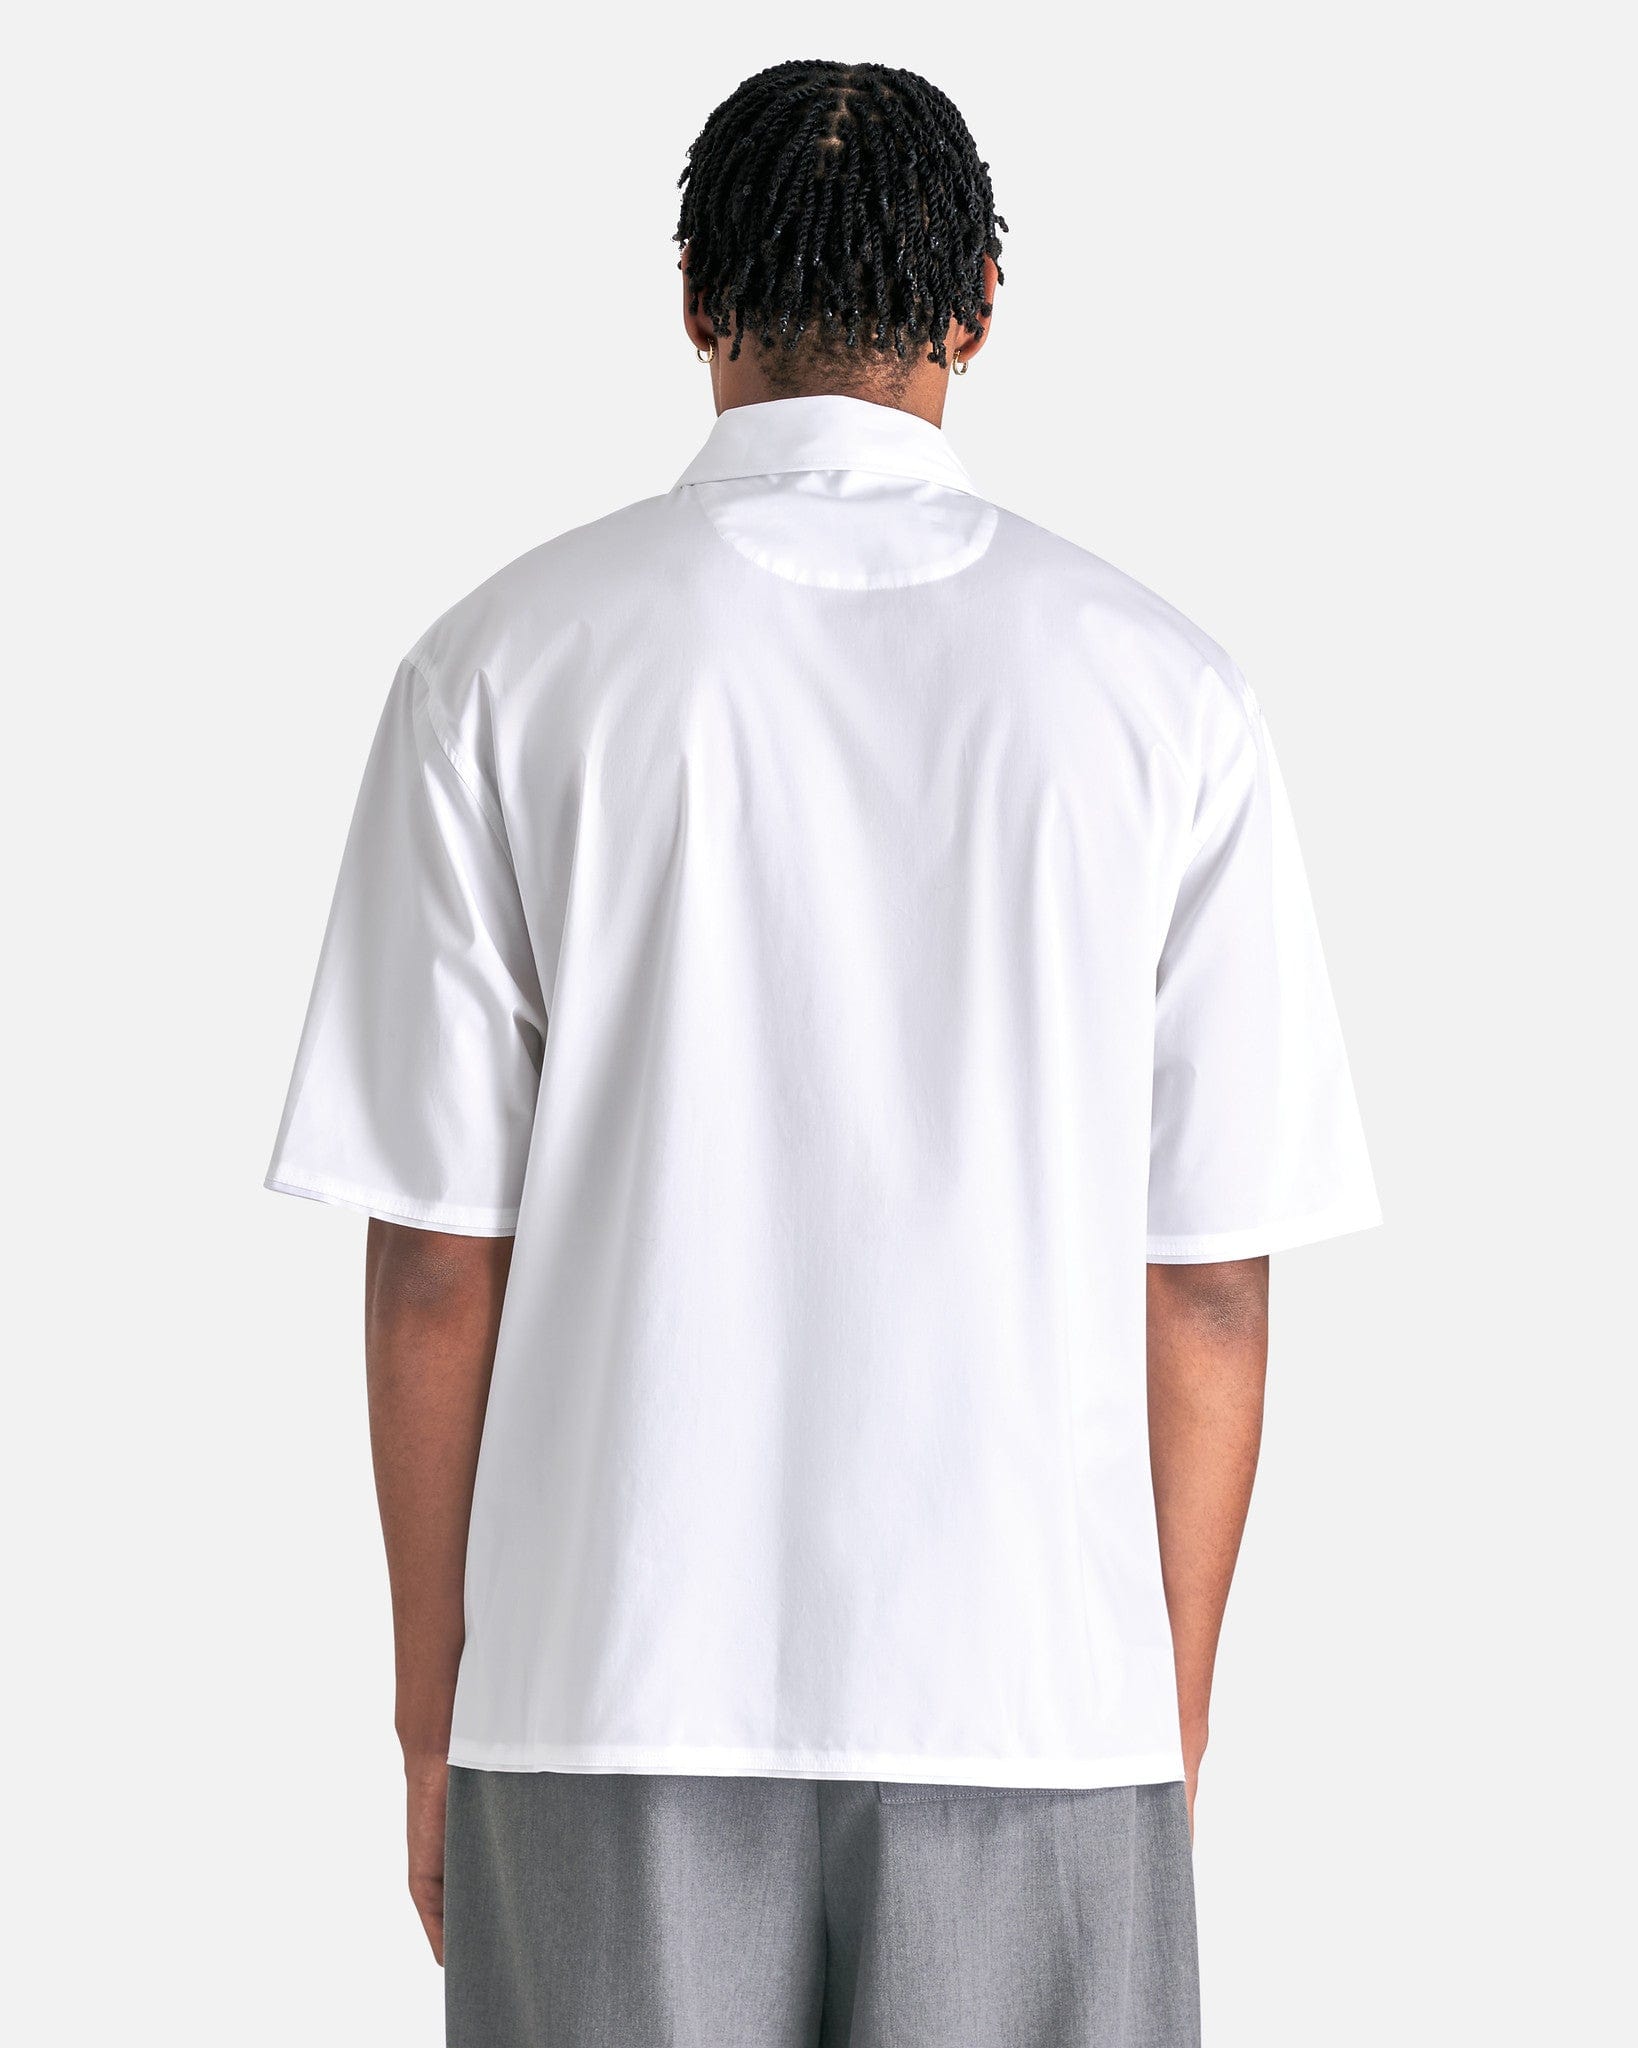 Jacquemus Men's Shirts La Chemise Cabri in Black/White Organic Statu